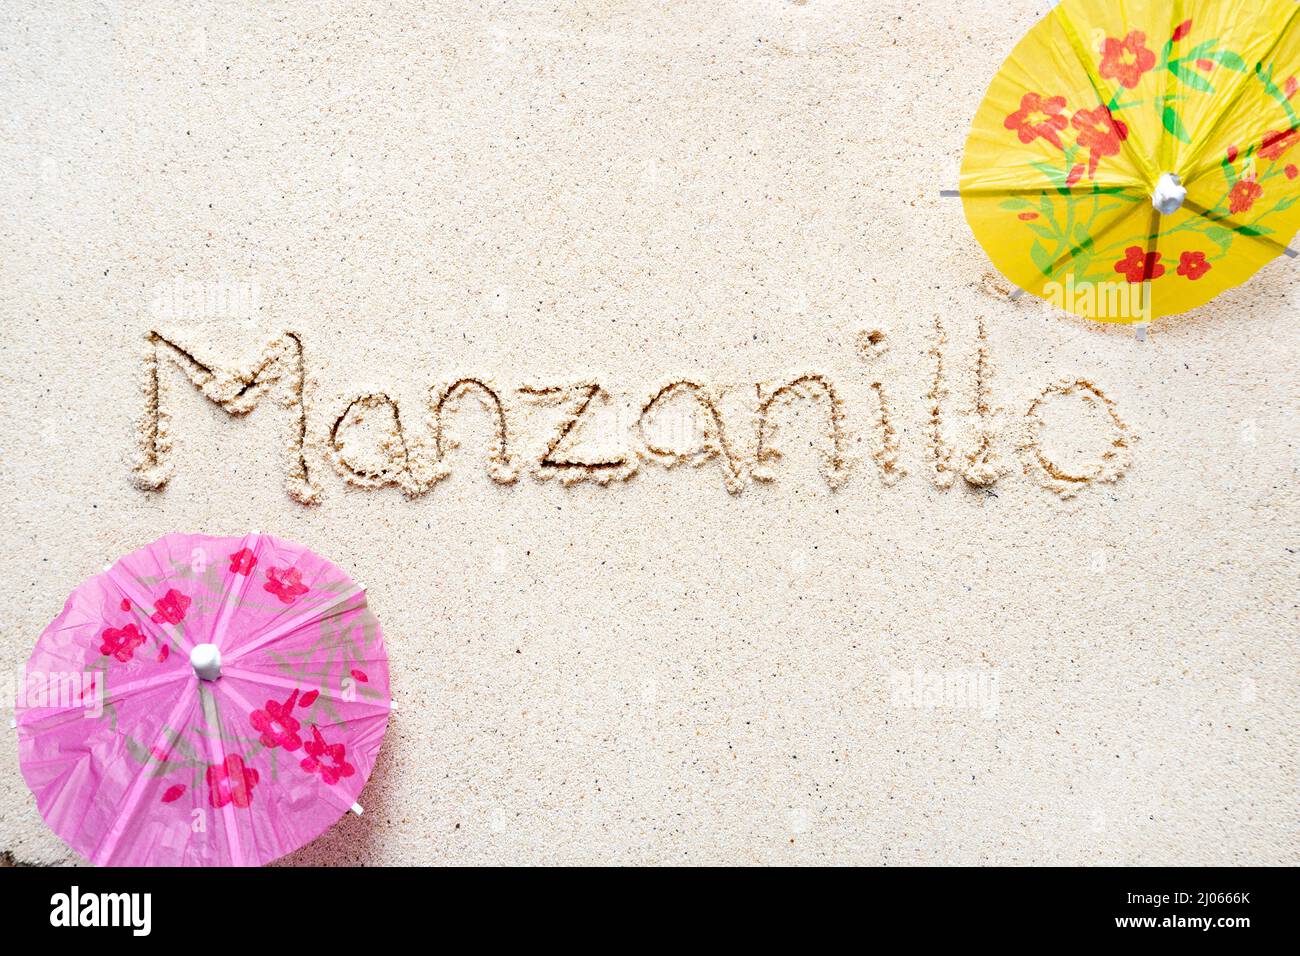 Scrivere a mano le parole 'Manzanillo' sulla sabbia della spiaggia Foto Stock